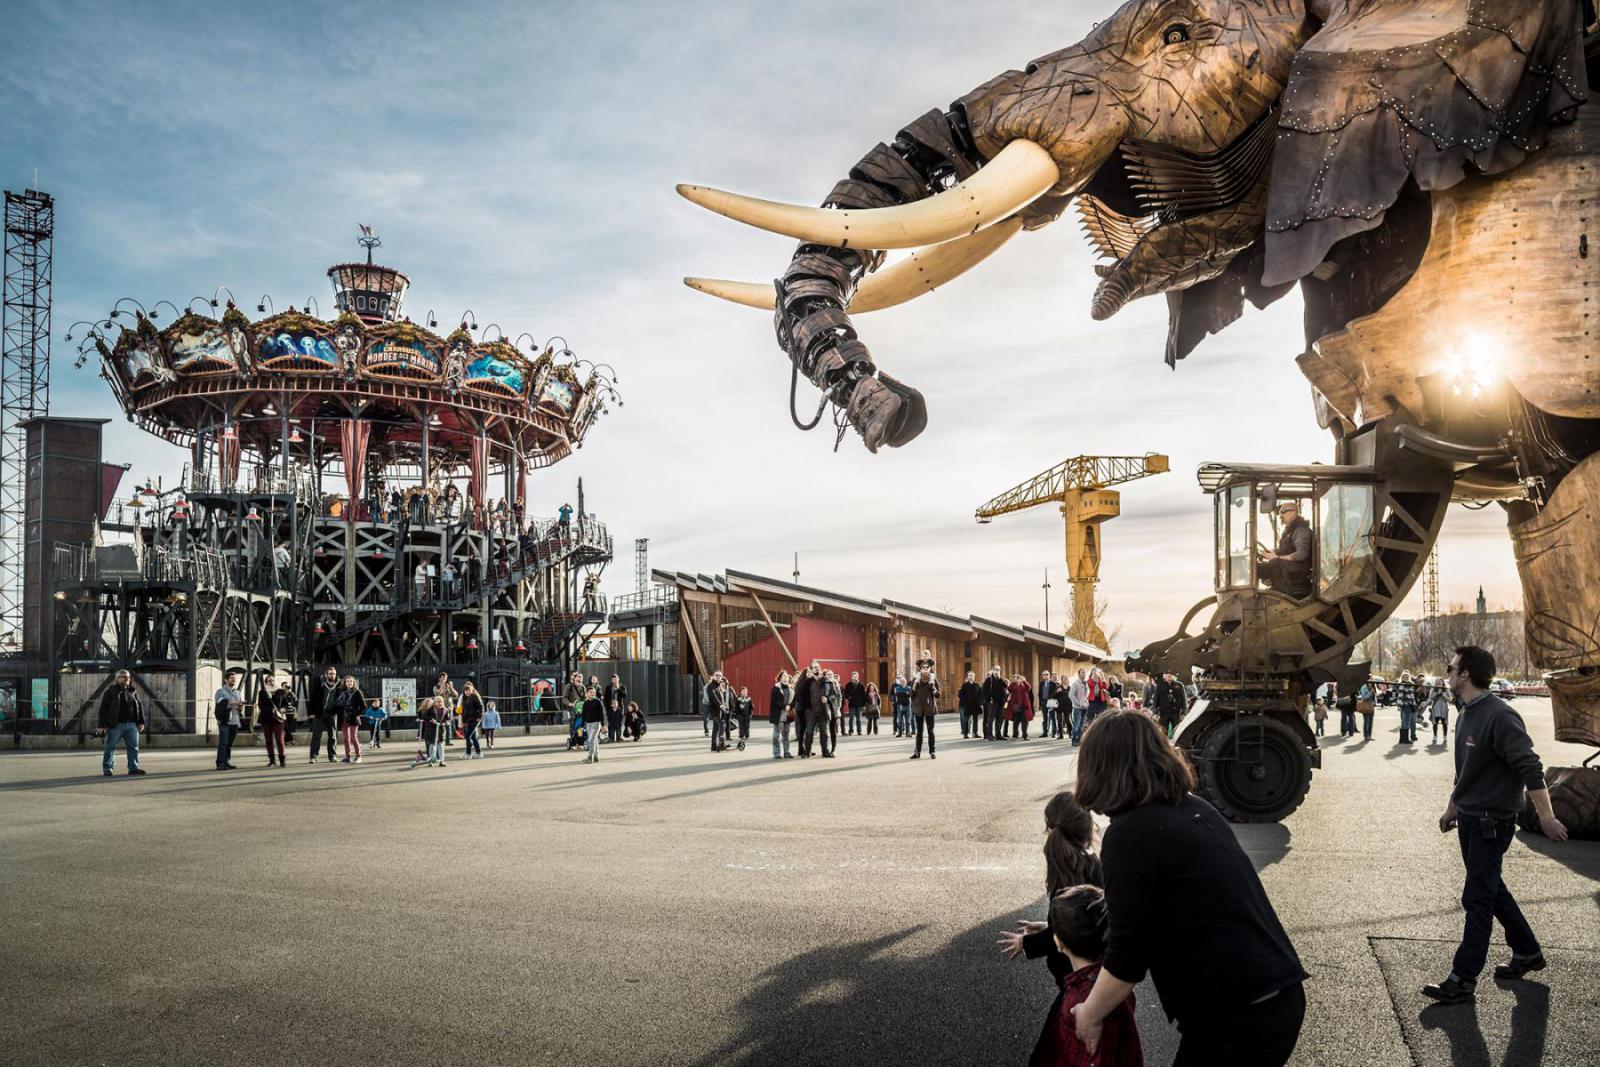 De reusachtige olifant als onderdeel van het kunstproject in Nantes